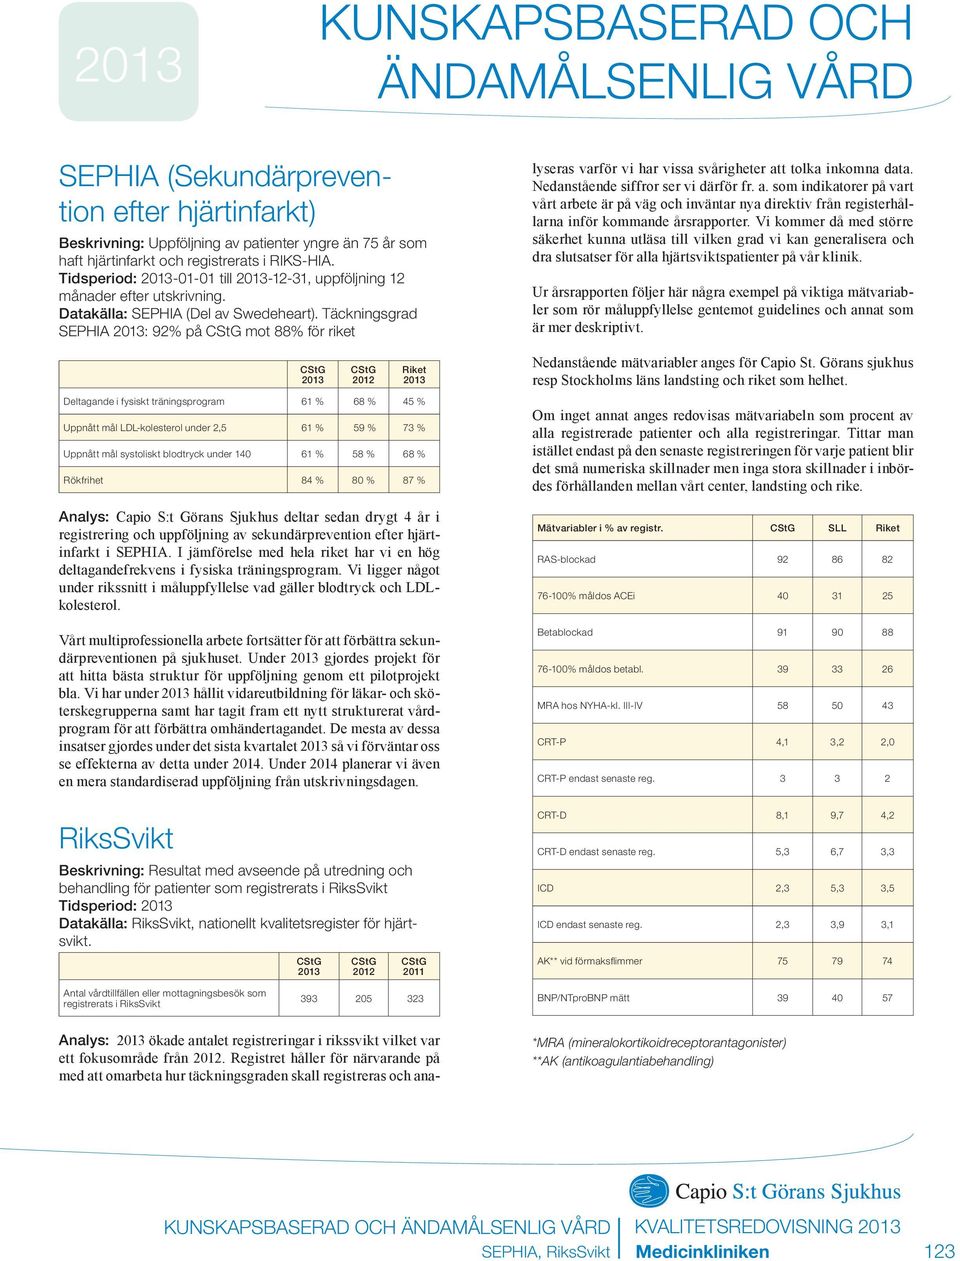 Täckningsgrad SEPHIA : 92% på mot 88% för riket Analys: ökade antalet registreringar i rikssvikt vilket var ett fokusområde från 2012.